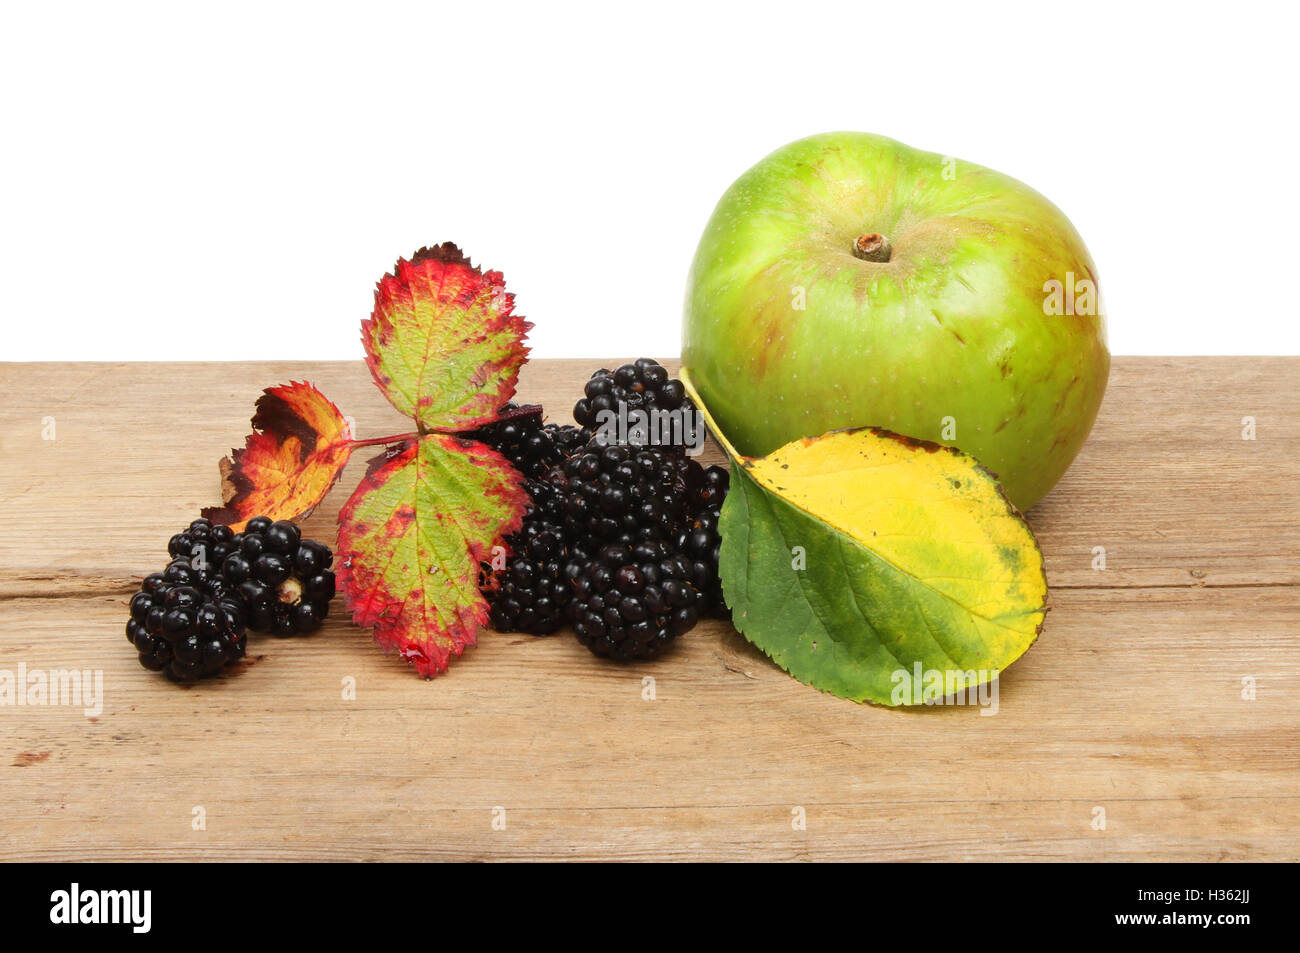 Autunno frutta, more e Bramley apple con foglie autunnali su legno rustico contro uno sfondo bianco Foto Stock